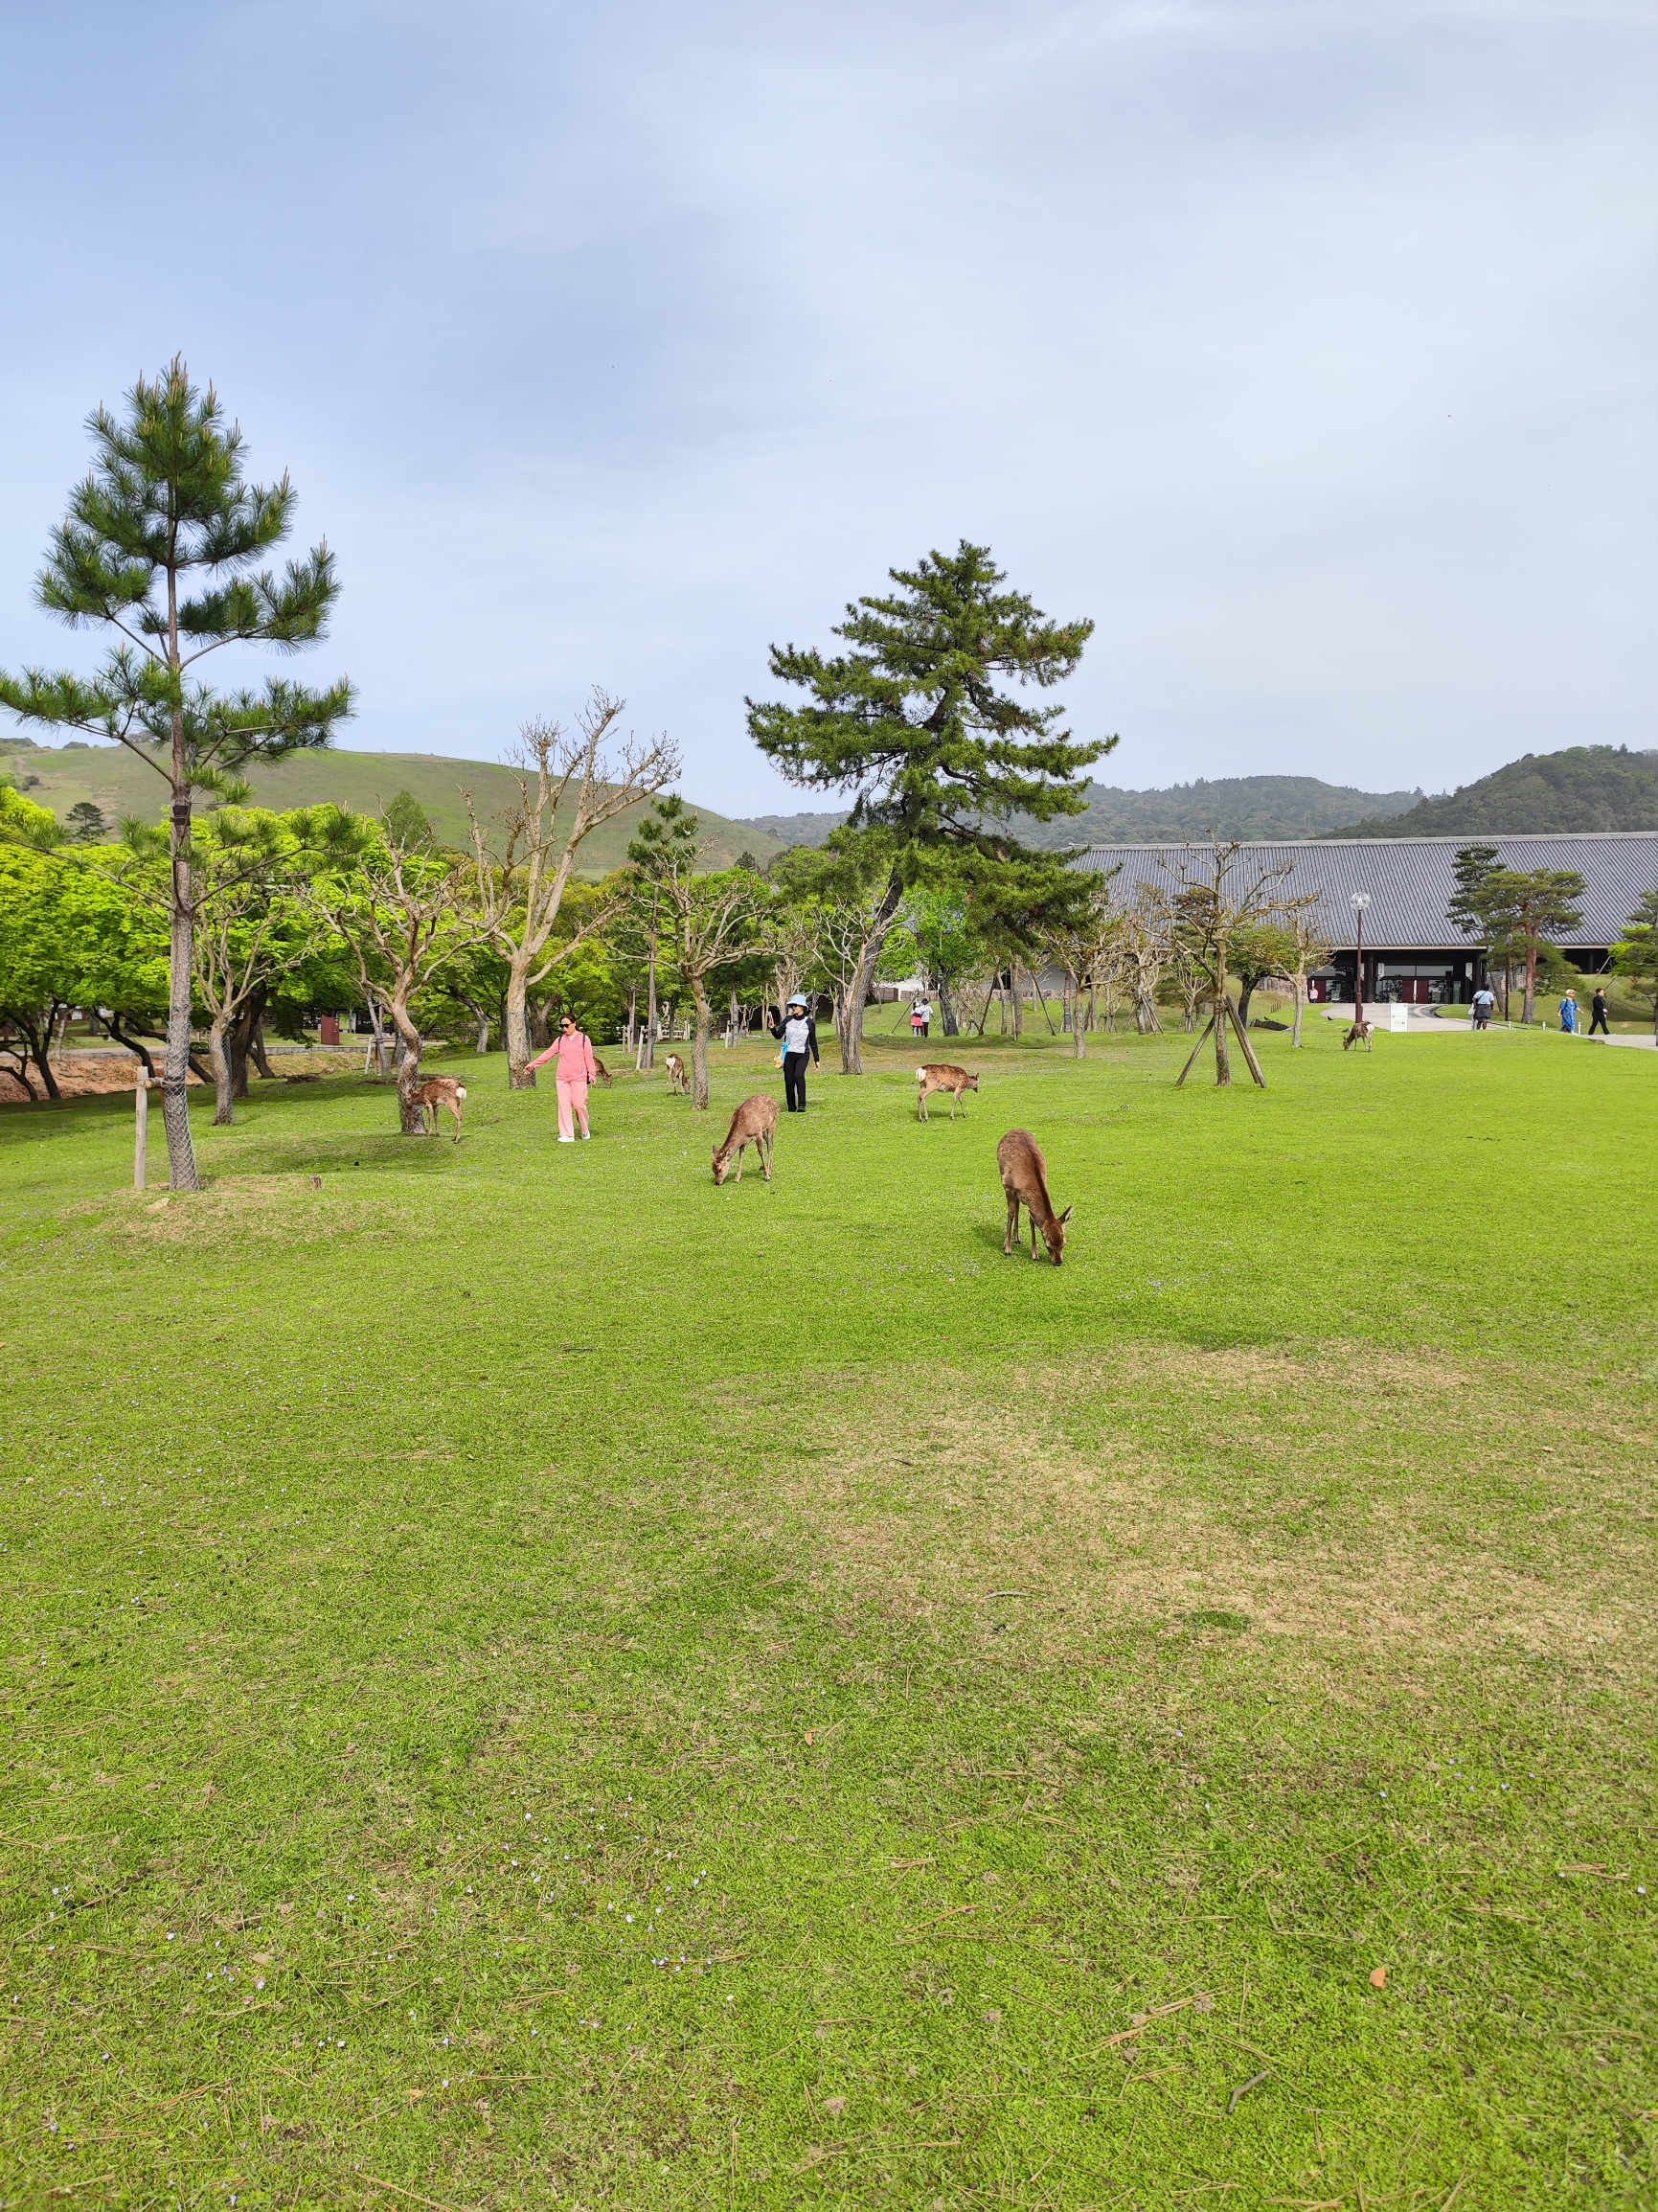 奈良公园是一个自然风光和历史古迹融合的公园。里面的东大寺（大华严寺）是世界文化遗产。若草山优美如画，